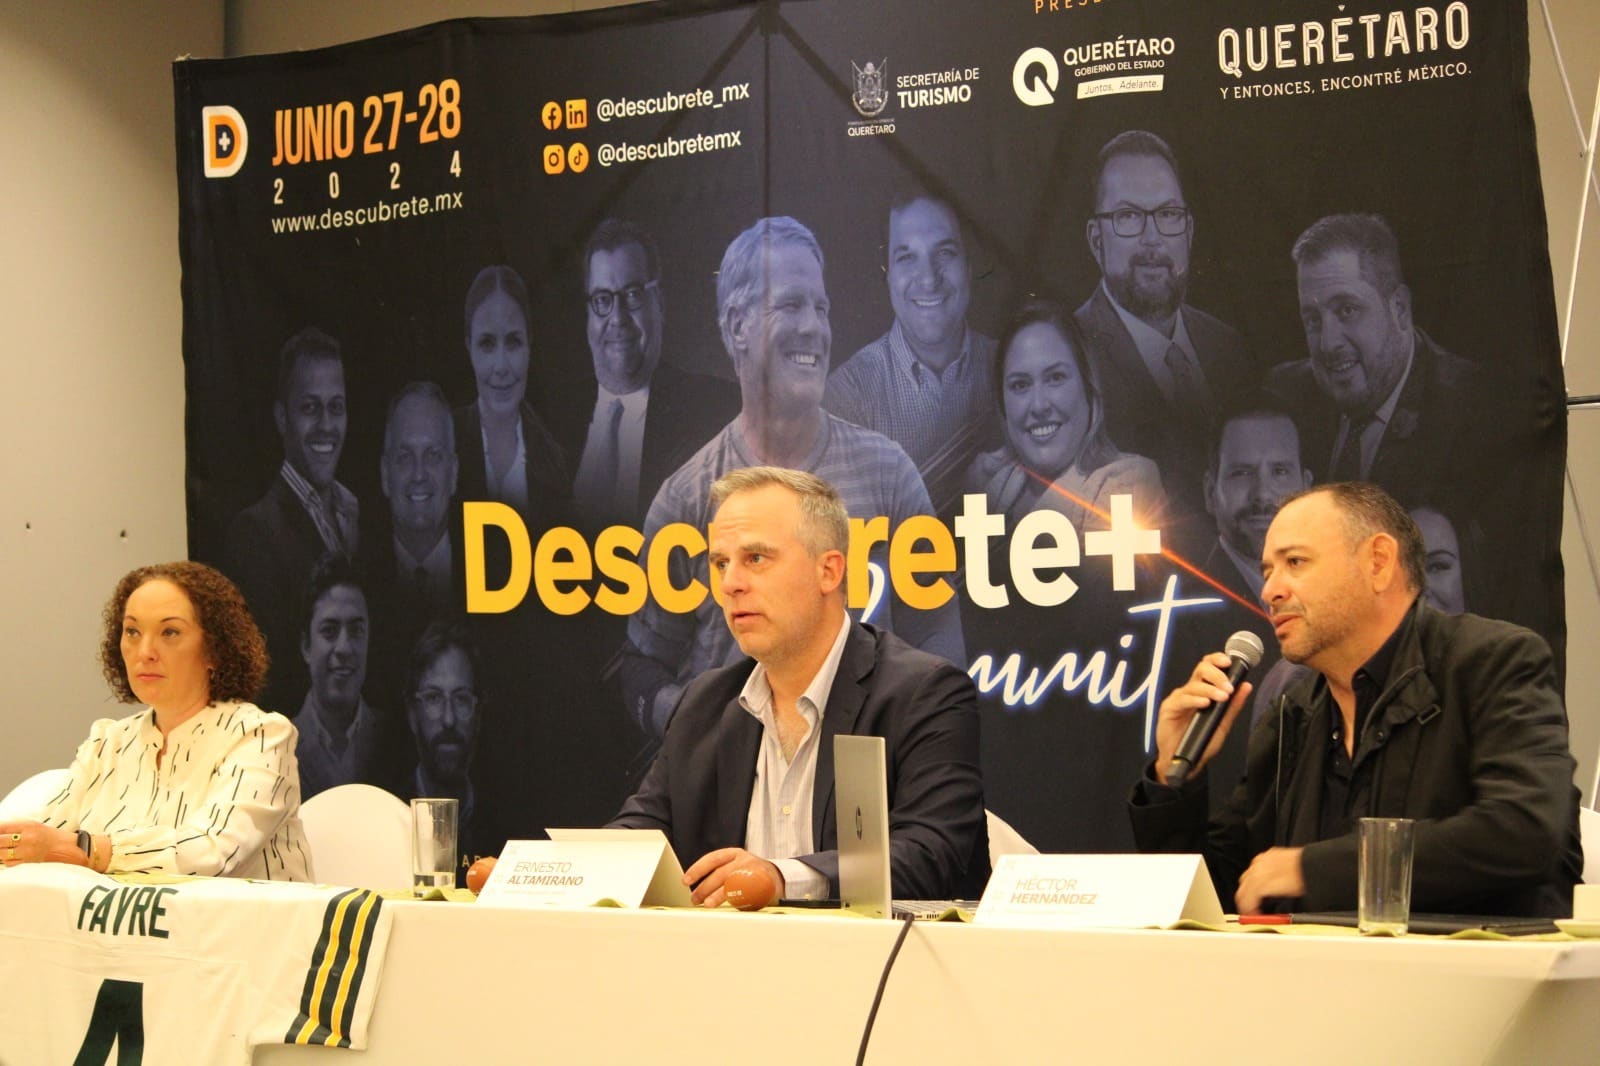 Conoce a la leyenda Brett Favre en Descúbrete+ Summit Querétaro